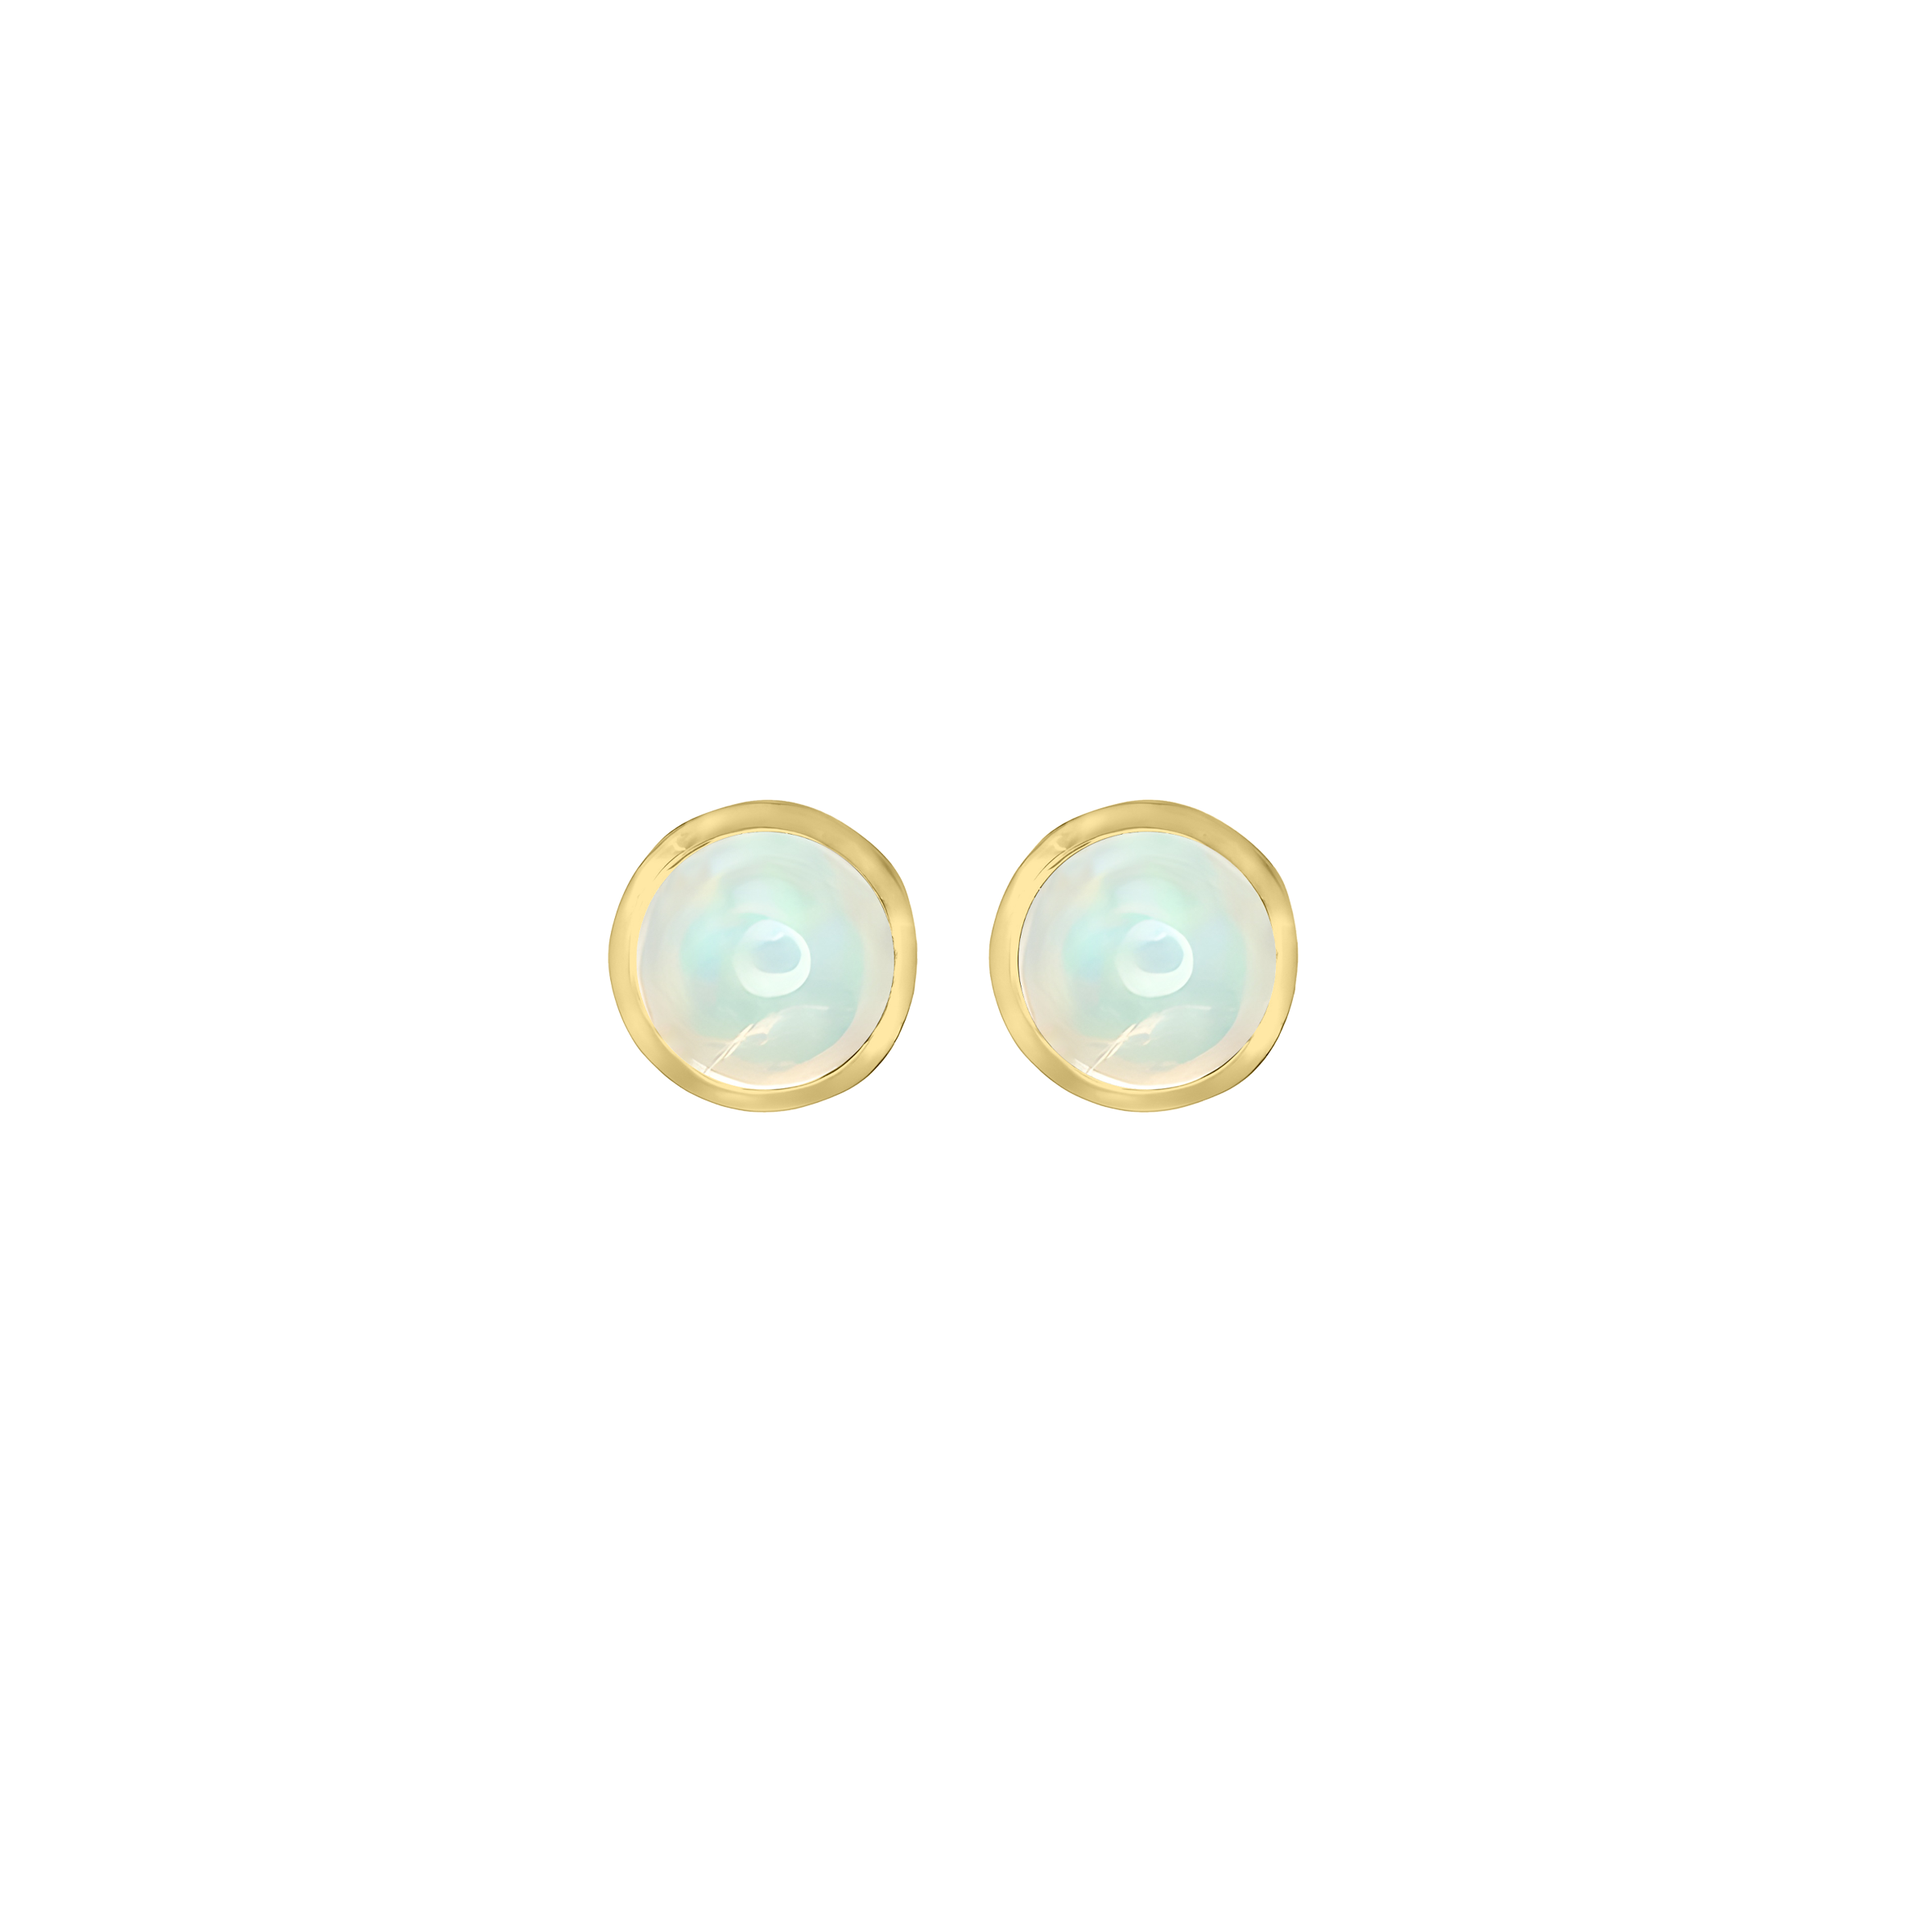 Opal Basket Bezel Set Earrings in 14k Yellow Gold